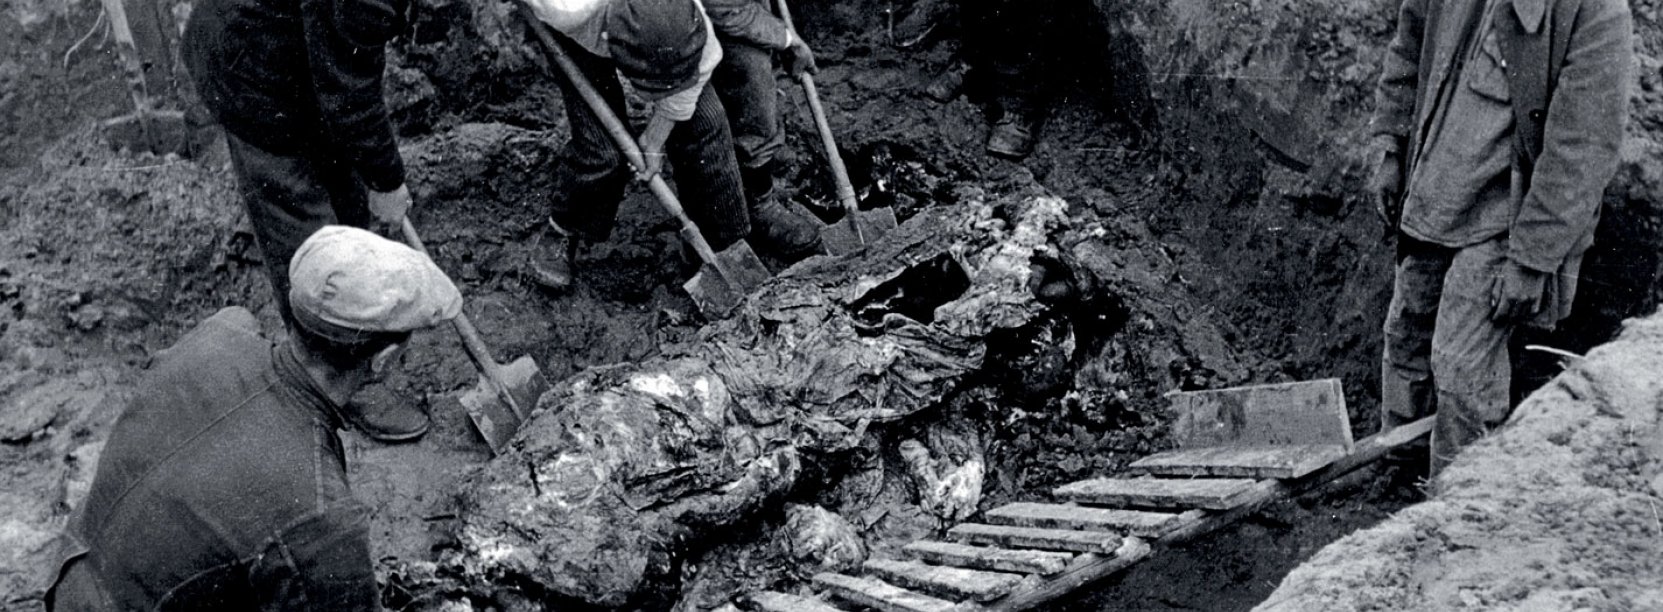 Archiwalne zdjęcie z ekshumacji zwłok w Katyniu